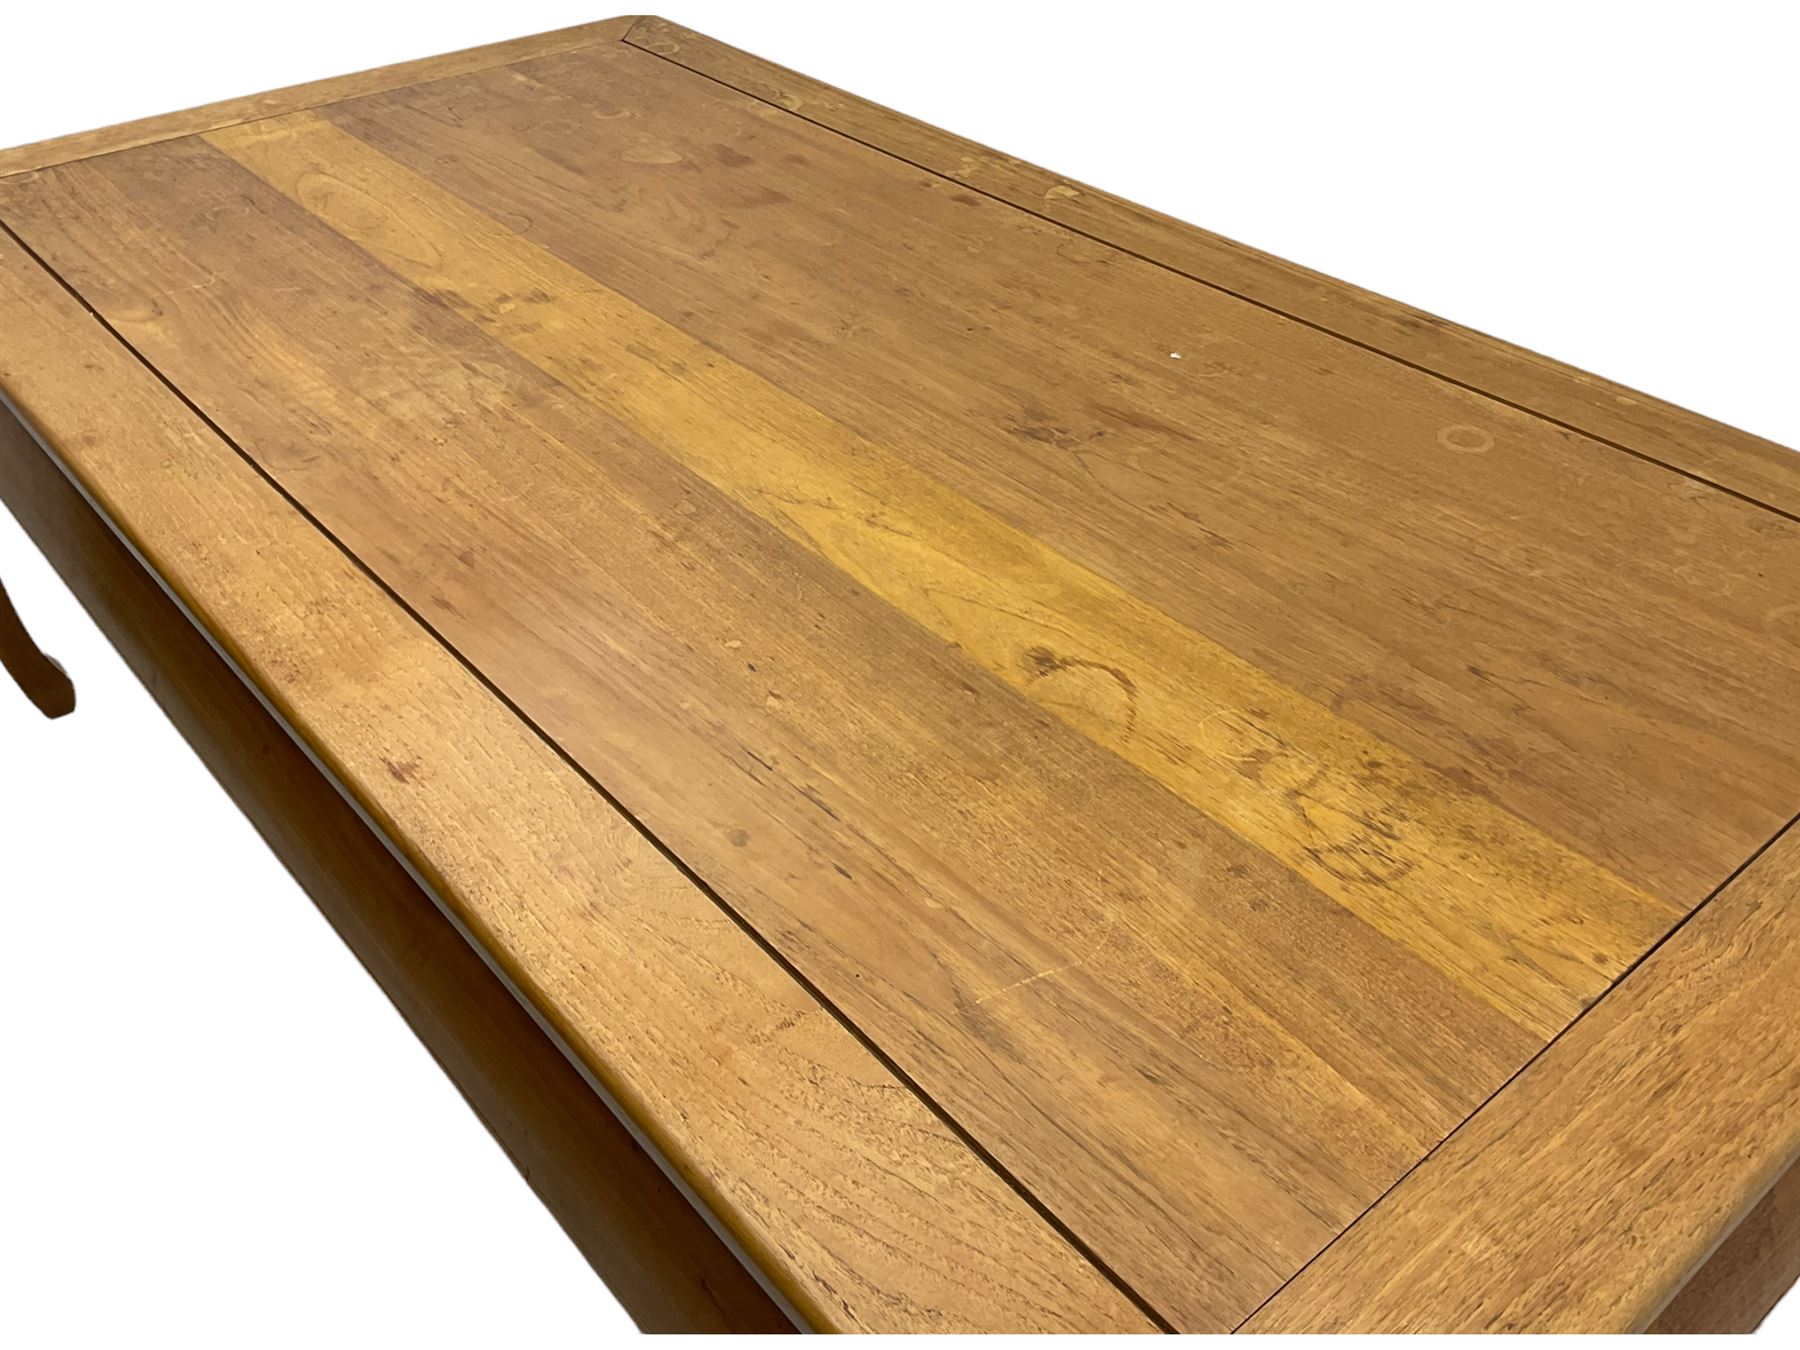 Oriental hardwood rectangular dining table - Image 22 of 22